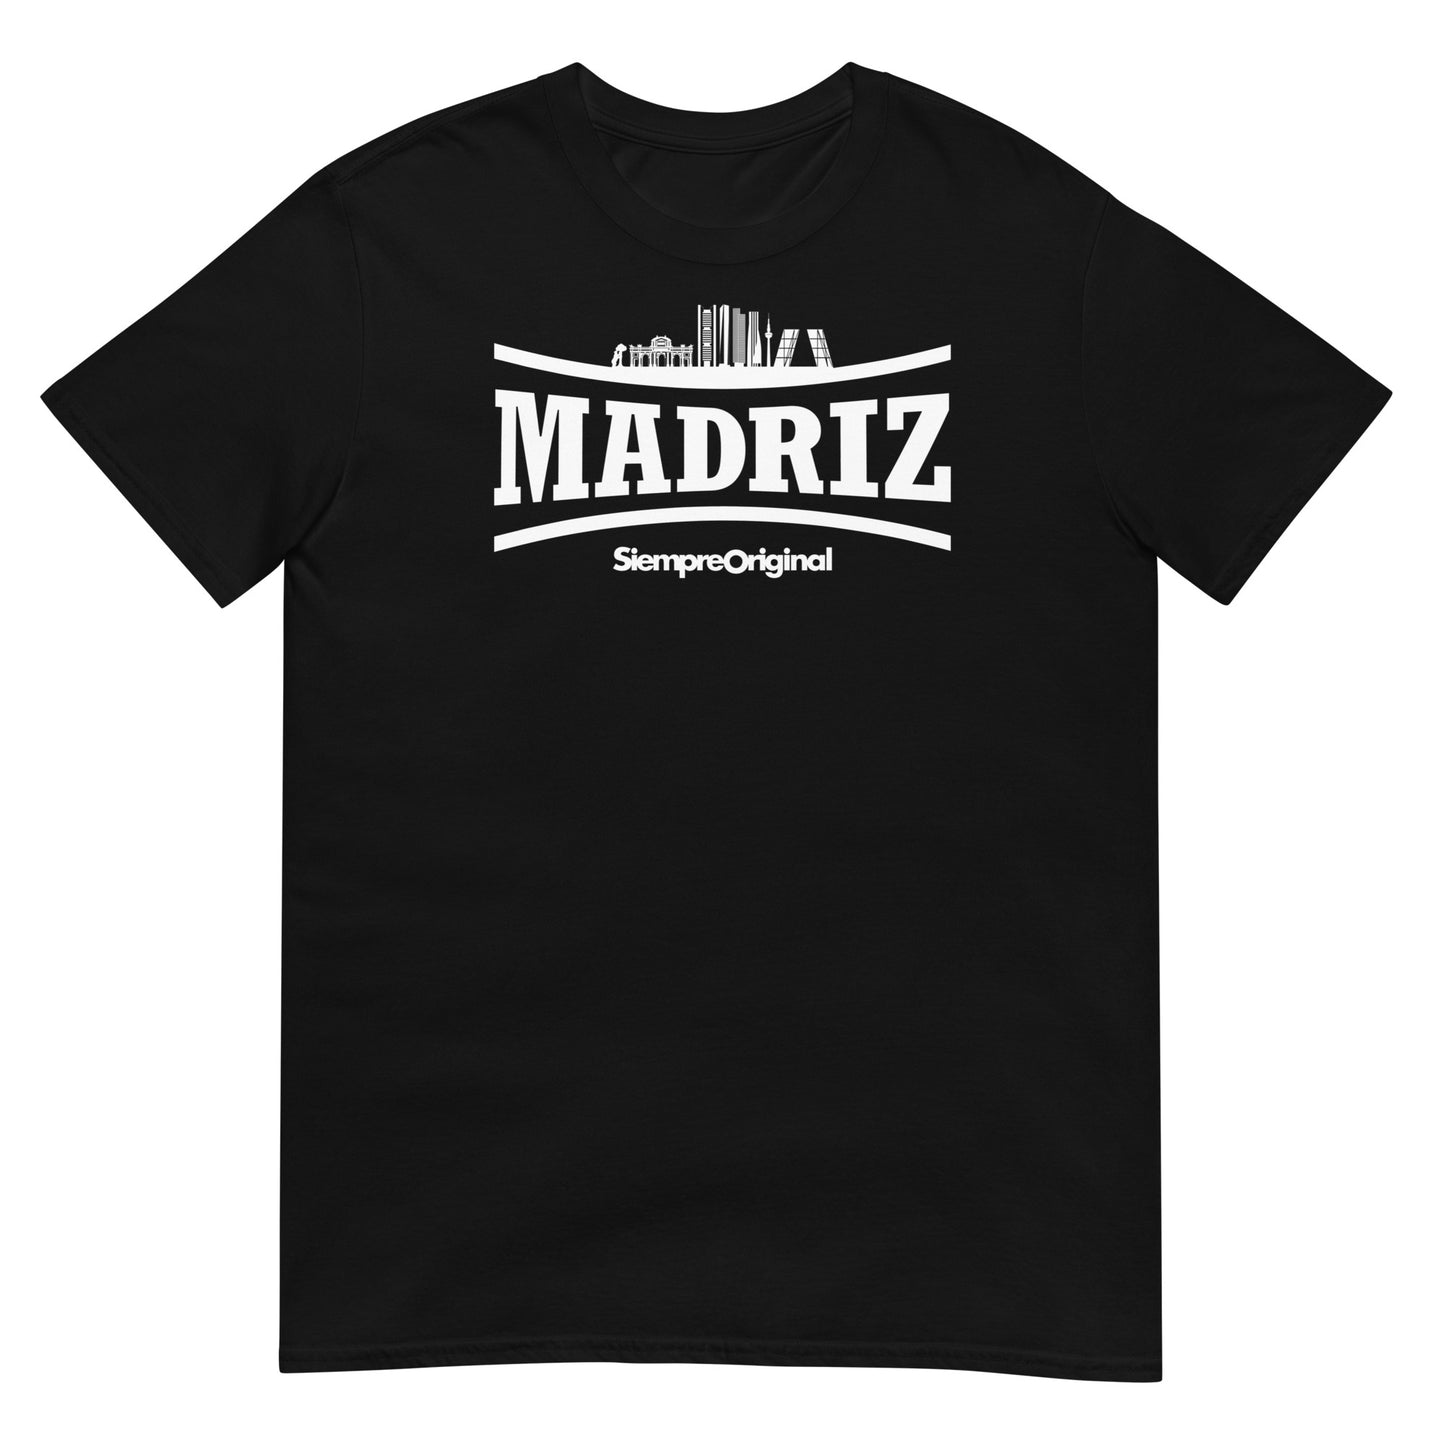 Camiseta de la ciudad de Madrid. Color Negro.